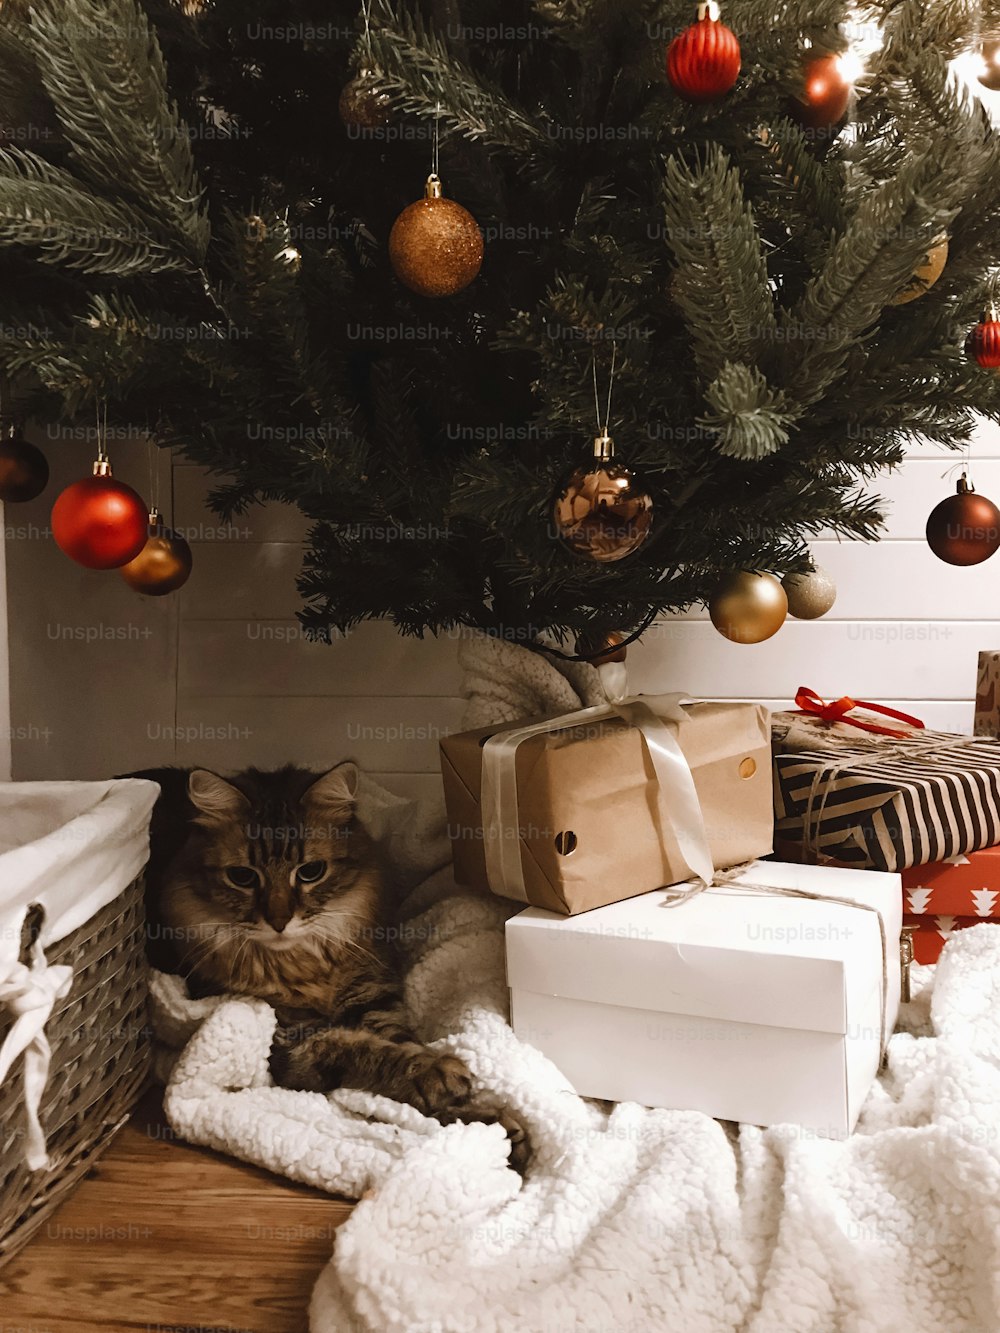 Lindo gato atigrado sentado con regalos debajo del árbol de Navidad con adornos rojos y dorados en la sala festiva. Mascota y vacaciones. Feliz Navidad